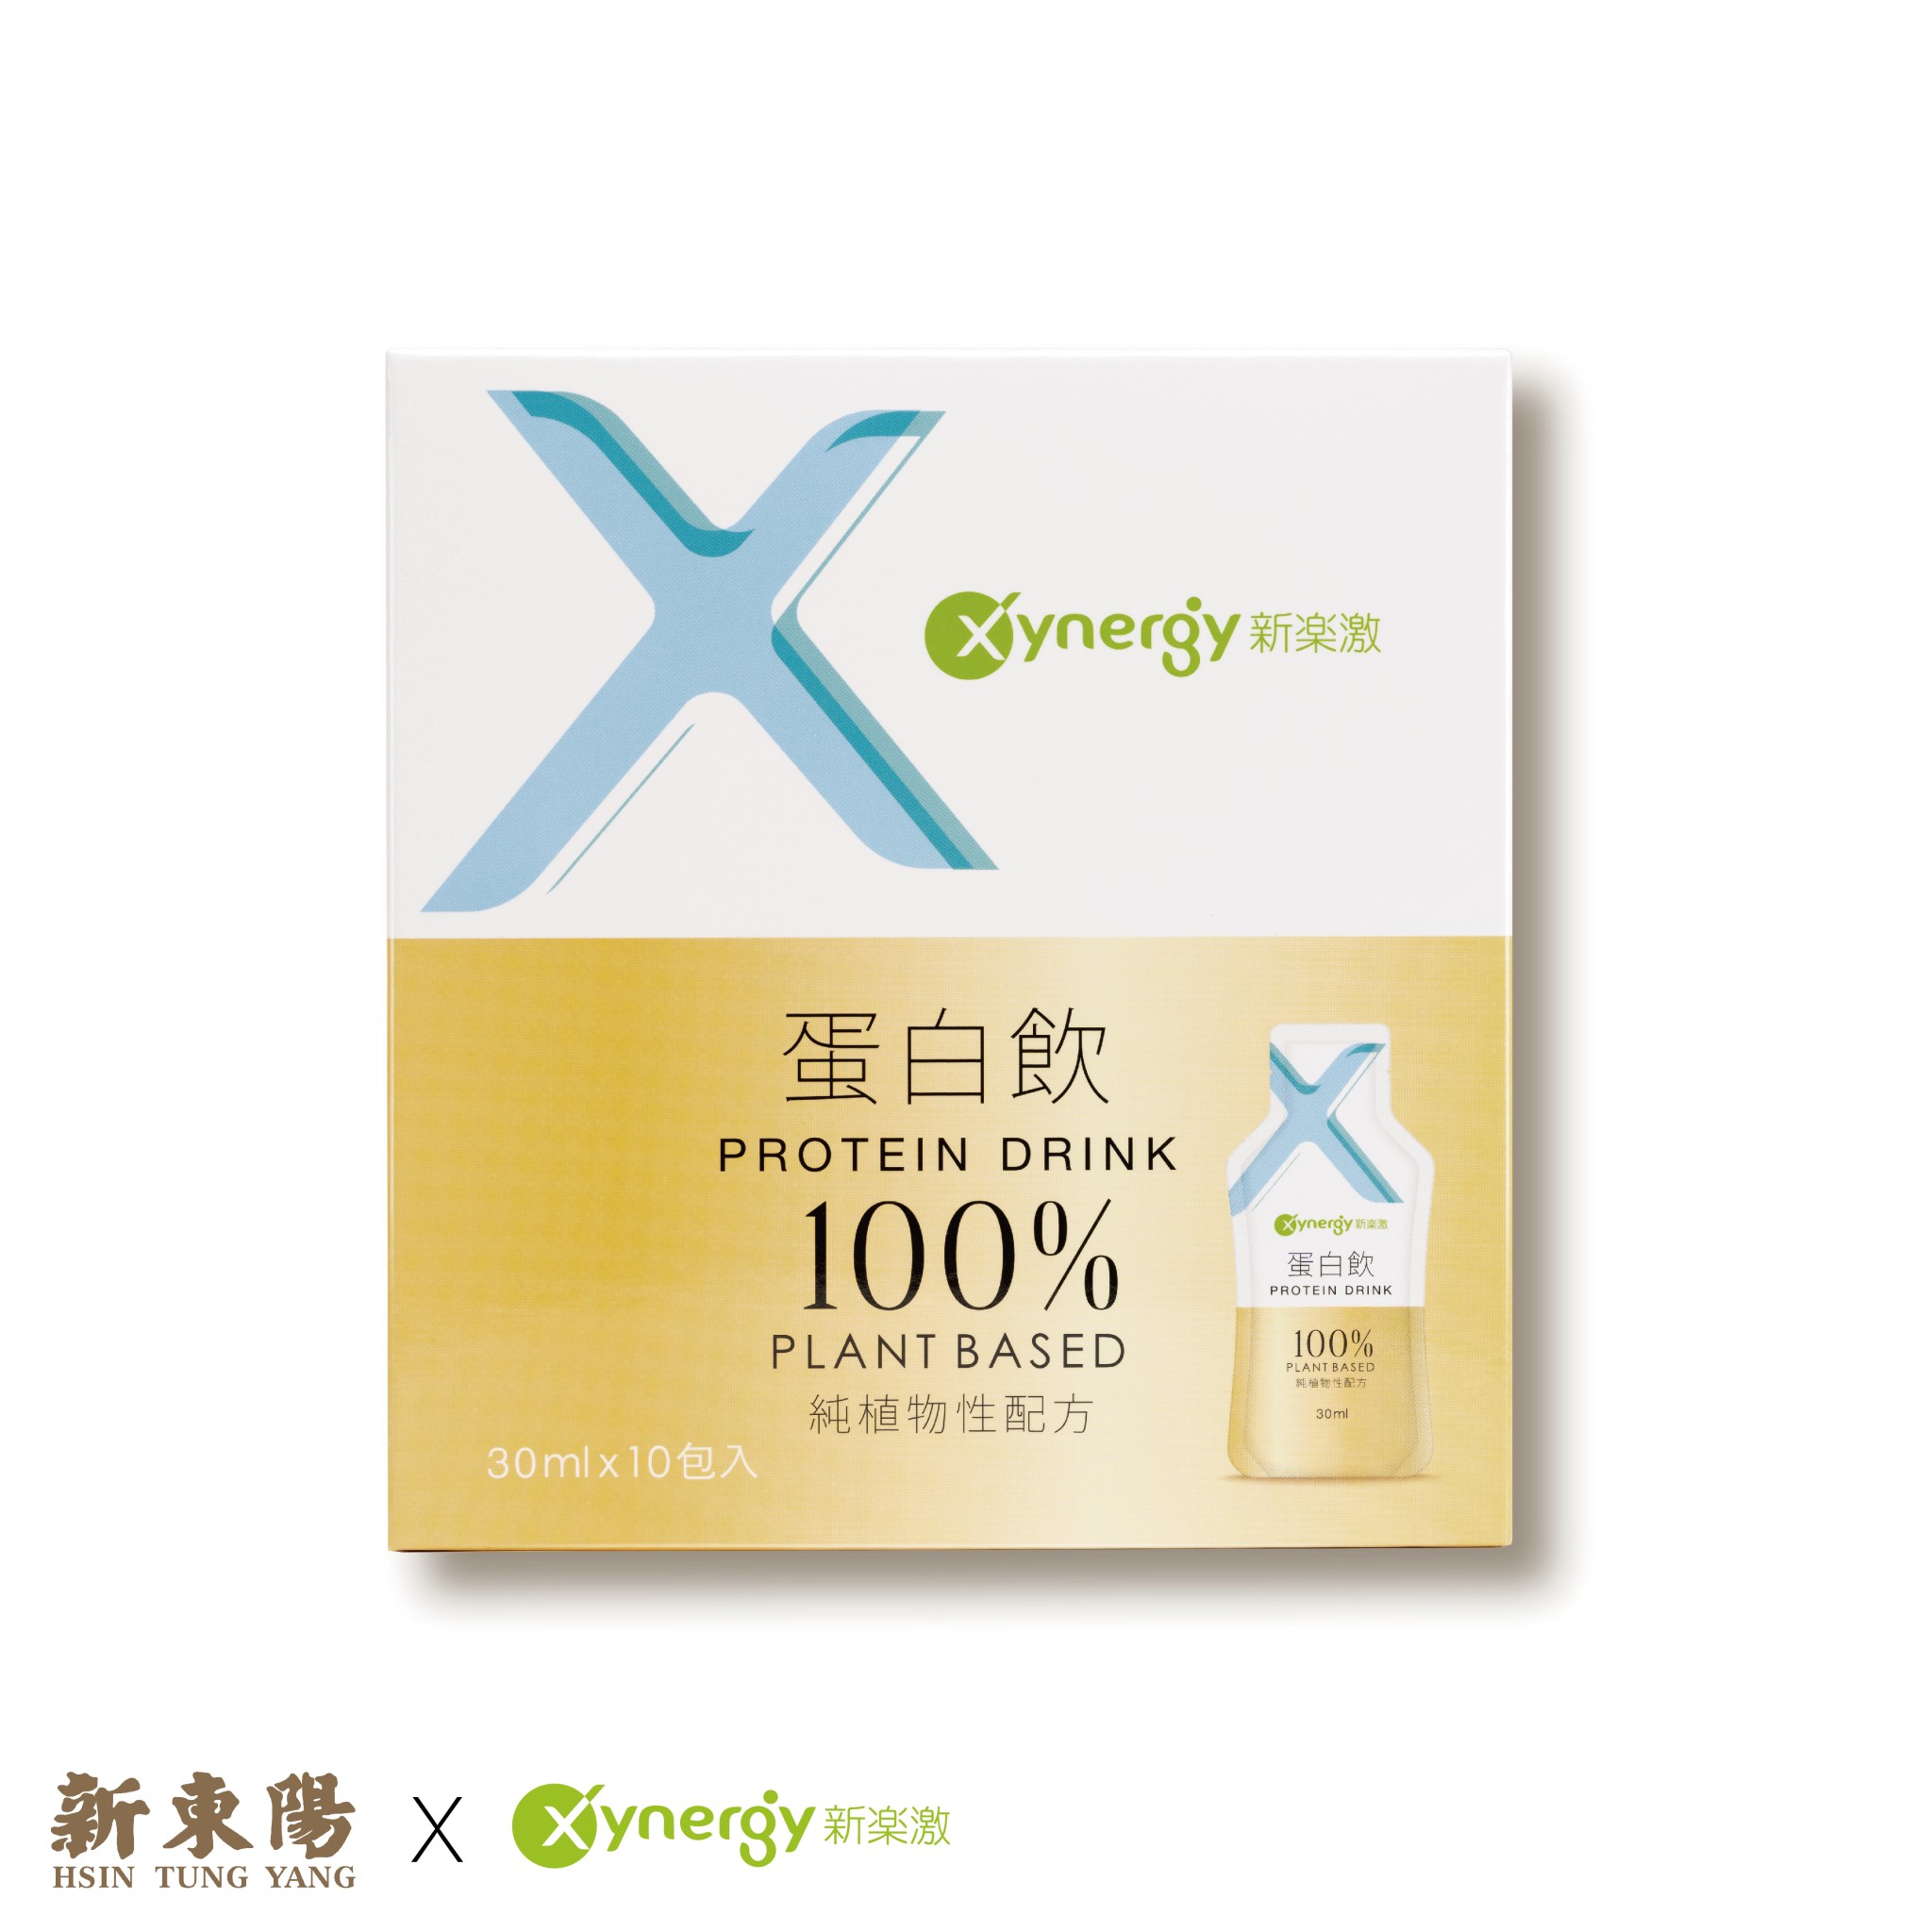 《新東陽x新樂激》Xynergy新樂激植物蛋白飲30ml/包*10包，共1盒